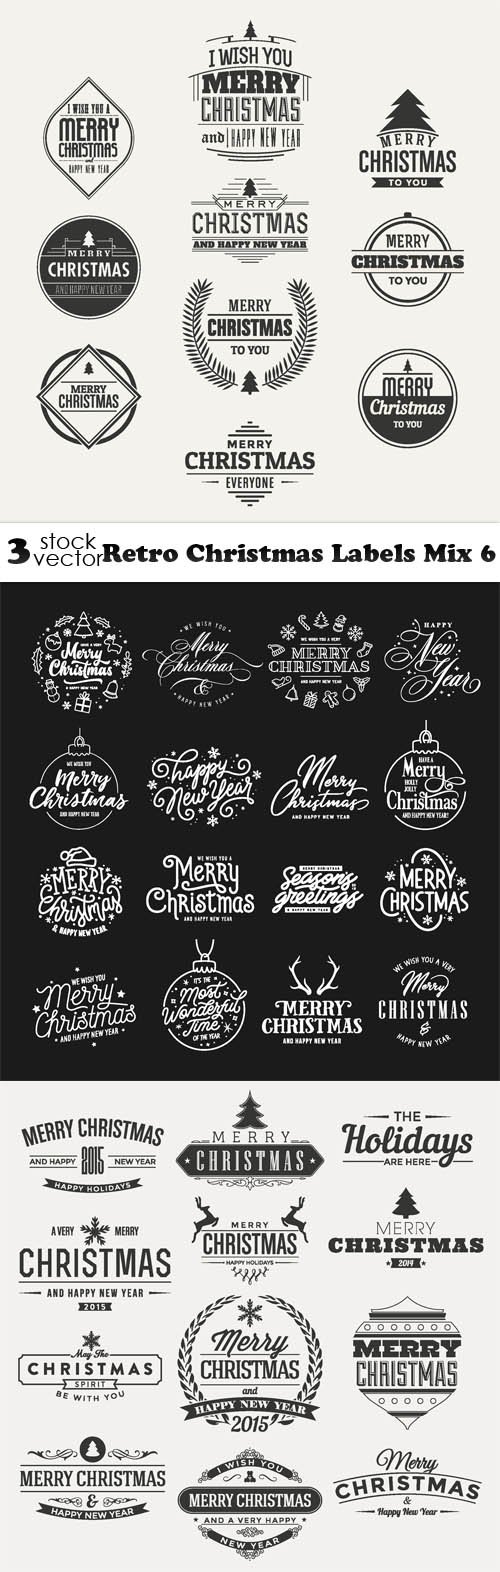 Vectors - Retro Christmas Labels Mix 6